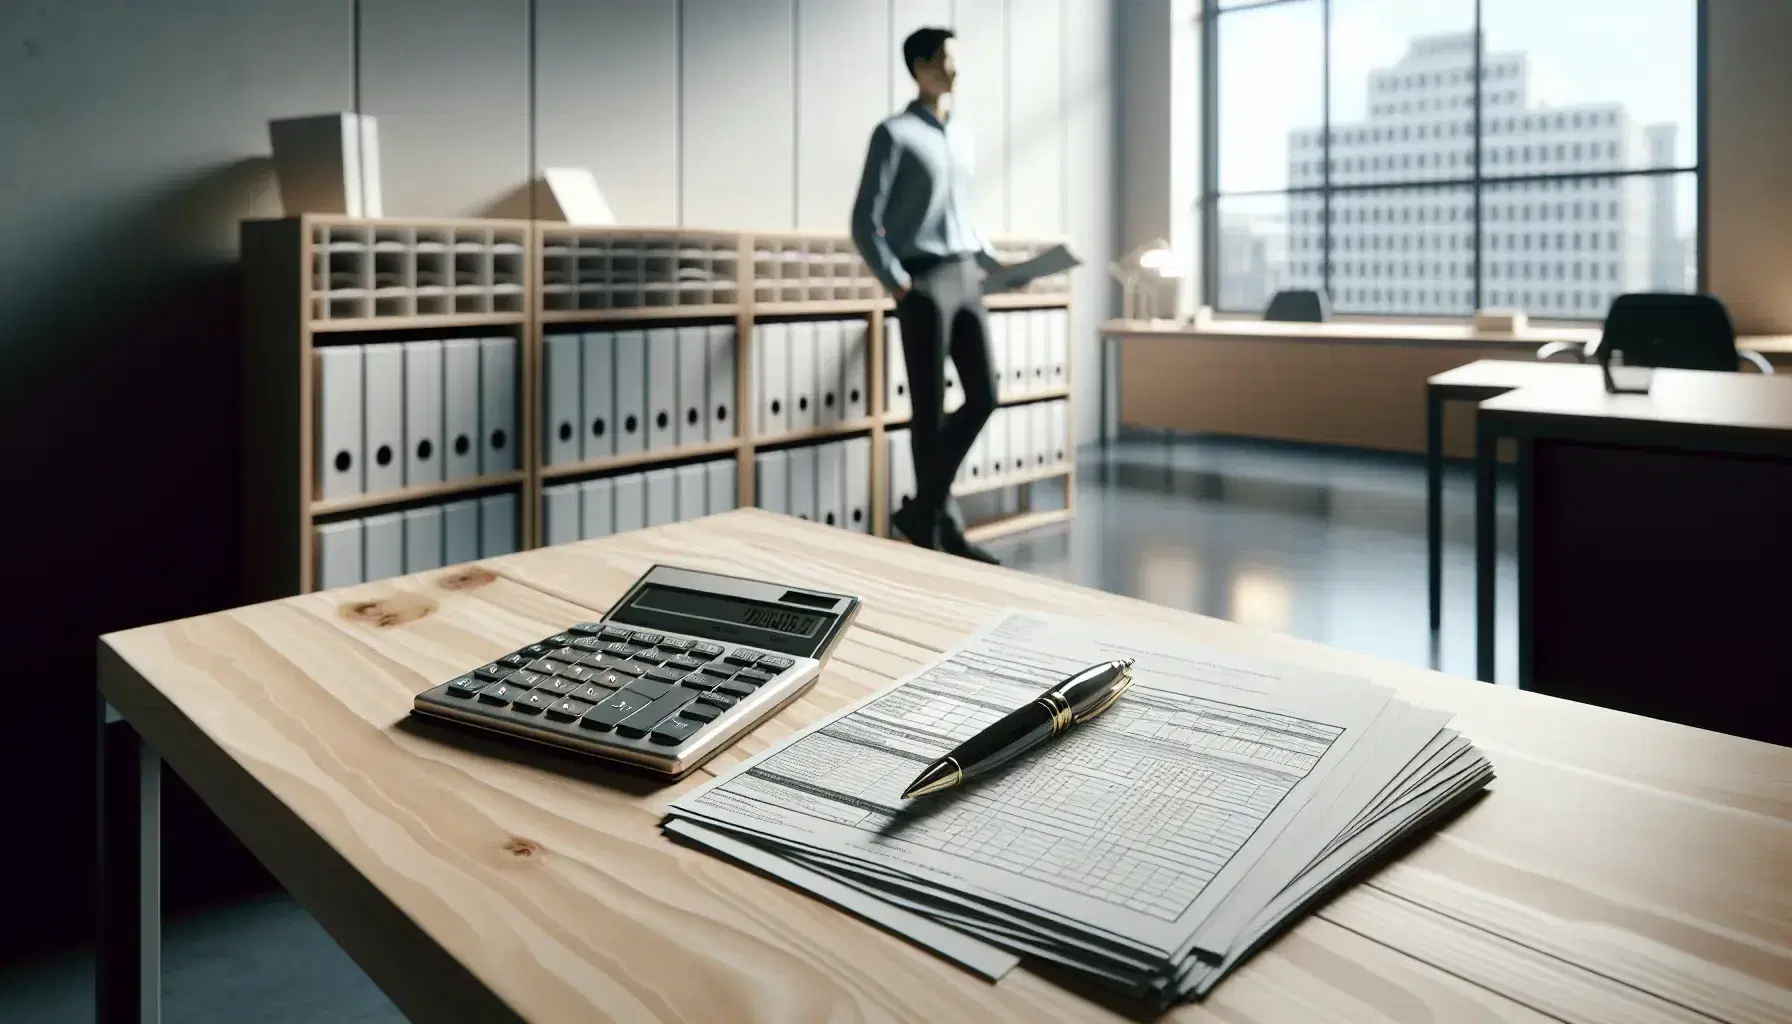 Escena de oficina gubernamental moderna con mesa de madera, calculadora, papeles y bolígrafo, y una persona de camisa azul y pantalón oscuro al fondo.